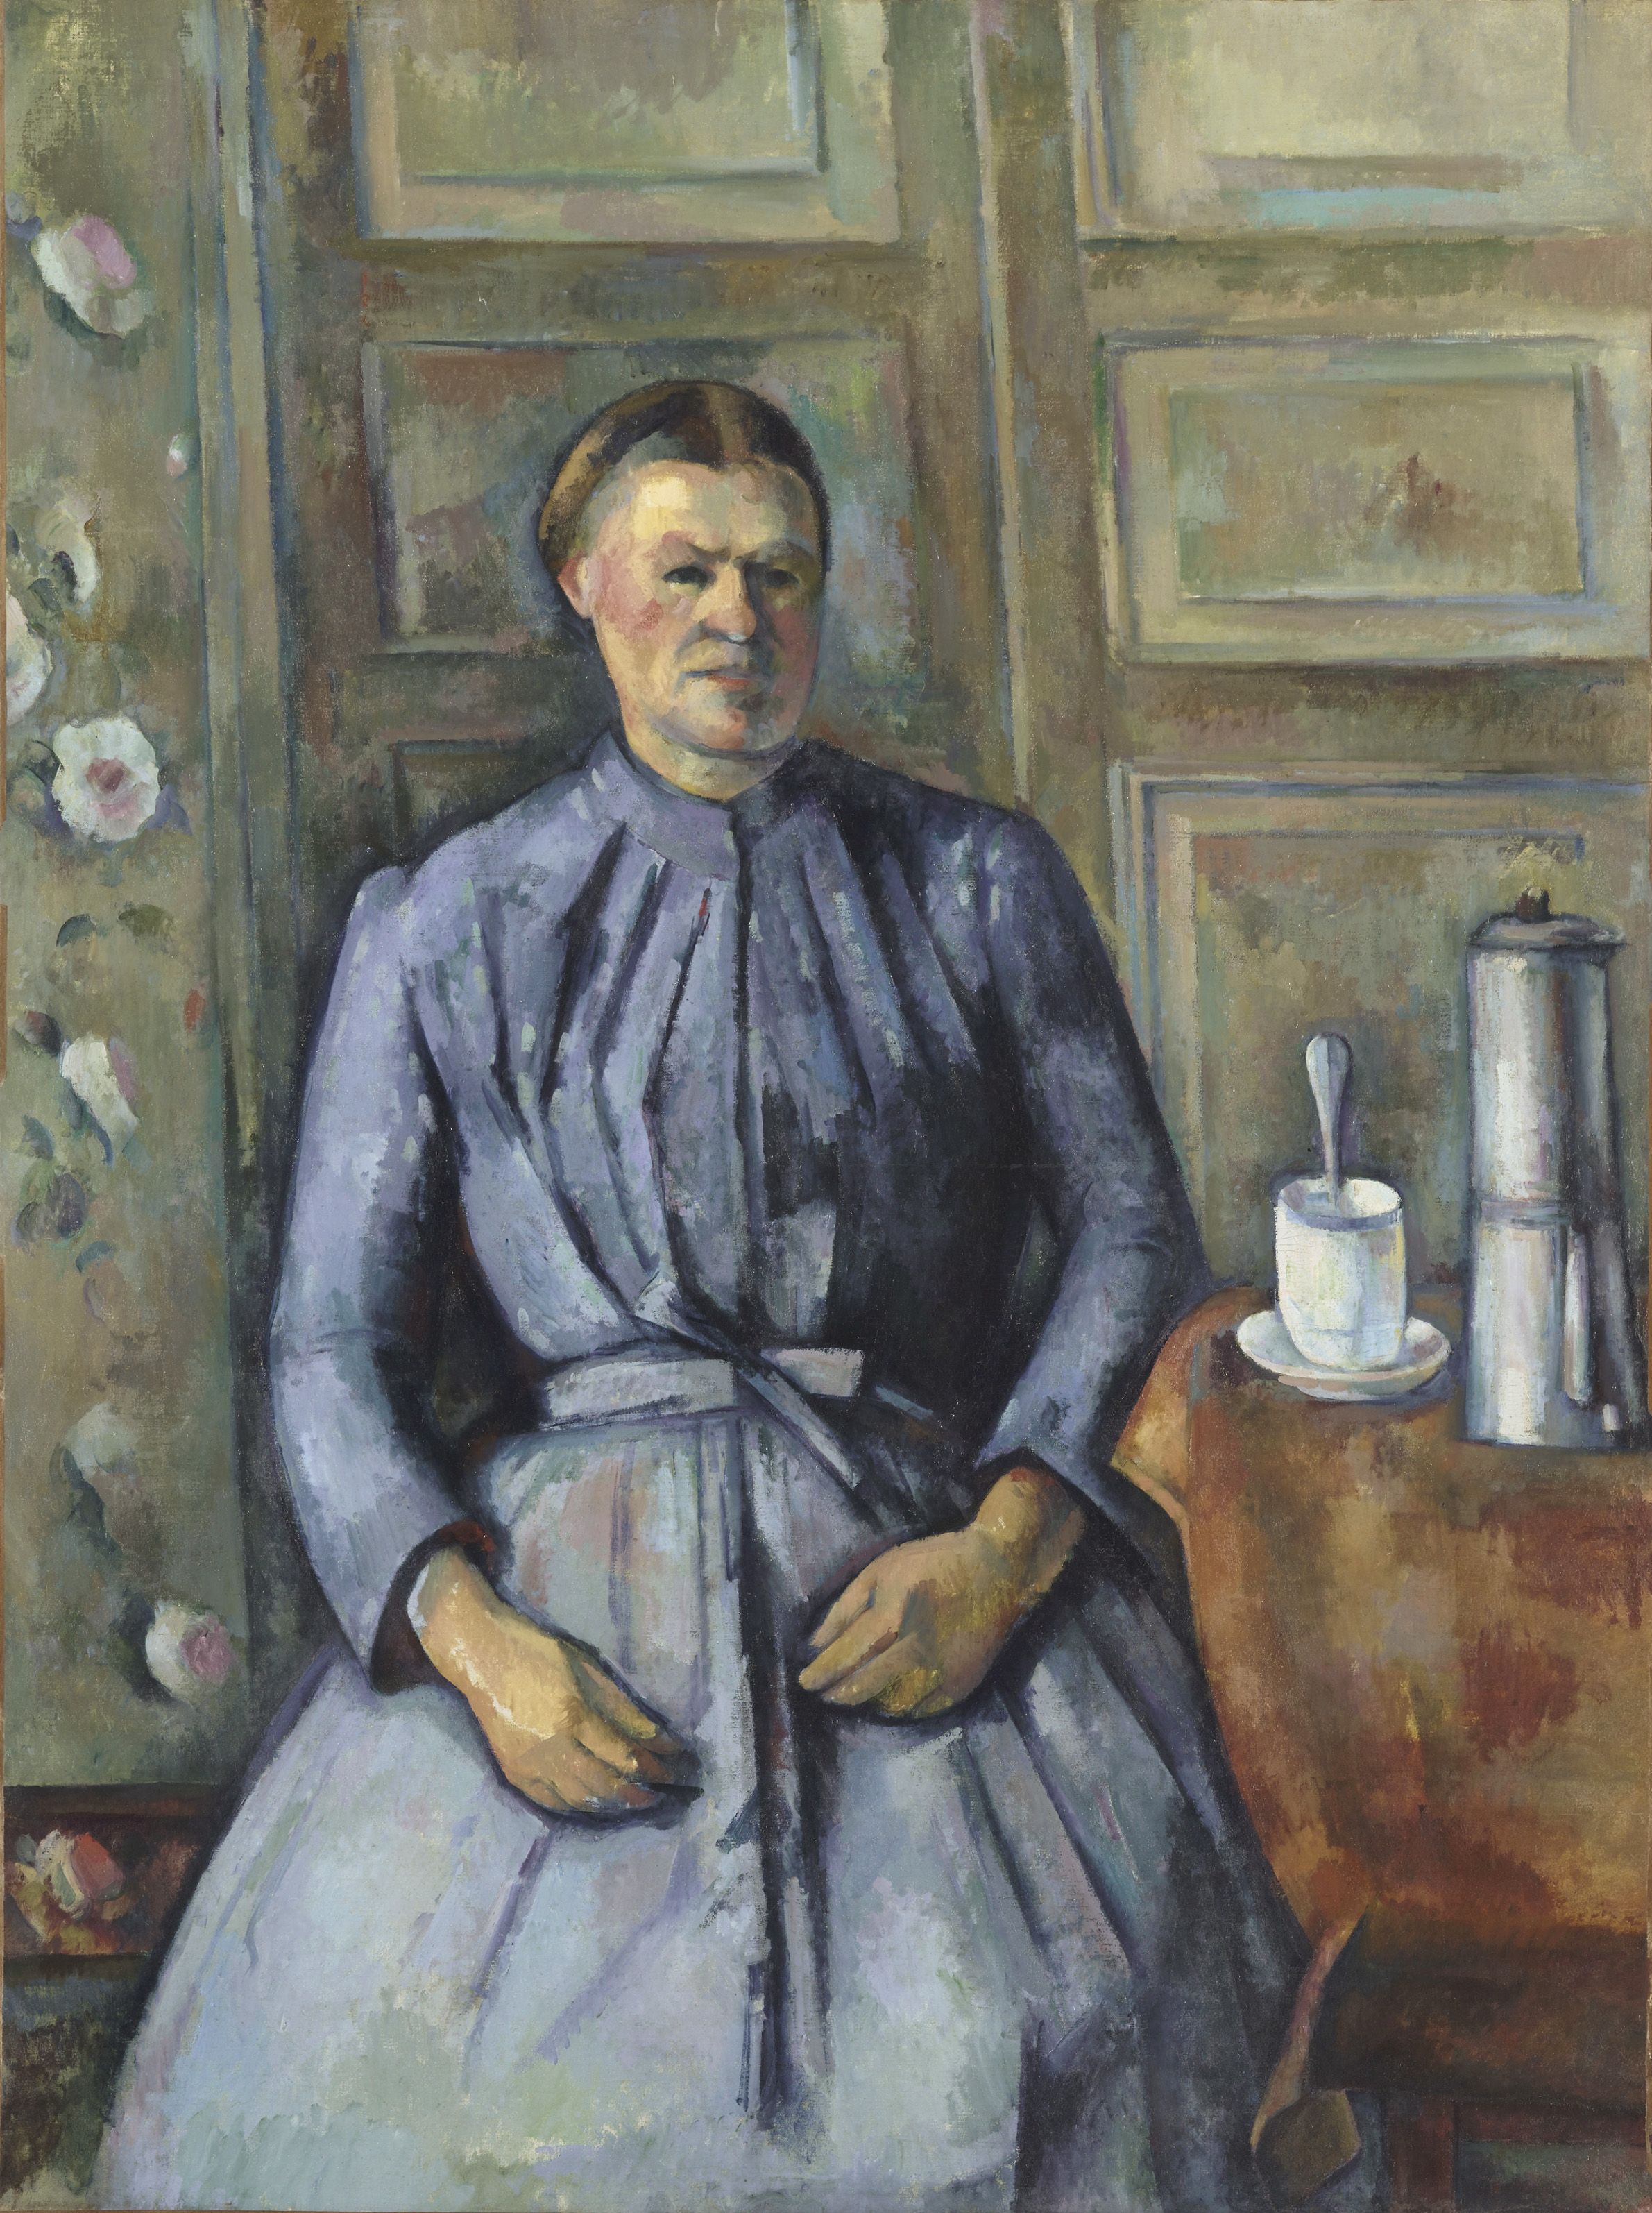 Portraits de Cézanne, Orsay Museum, Paris: 13 June- 24 September 2017